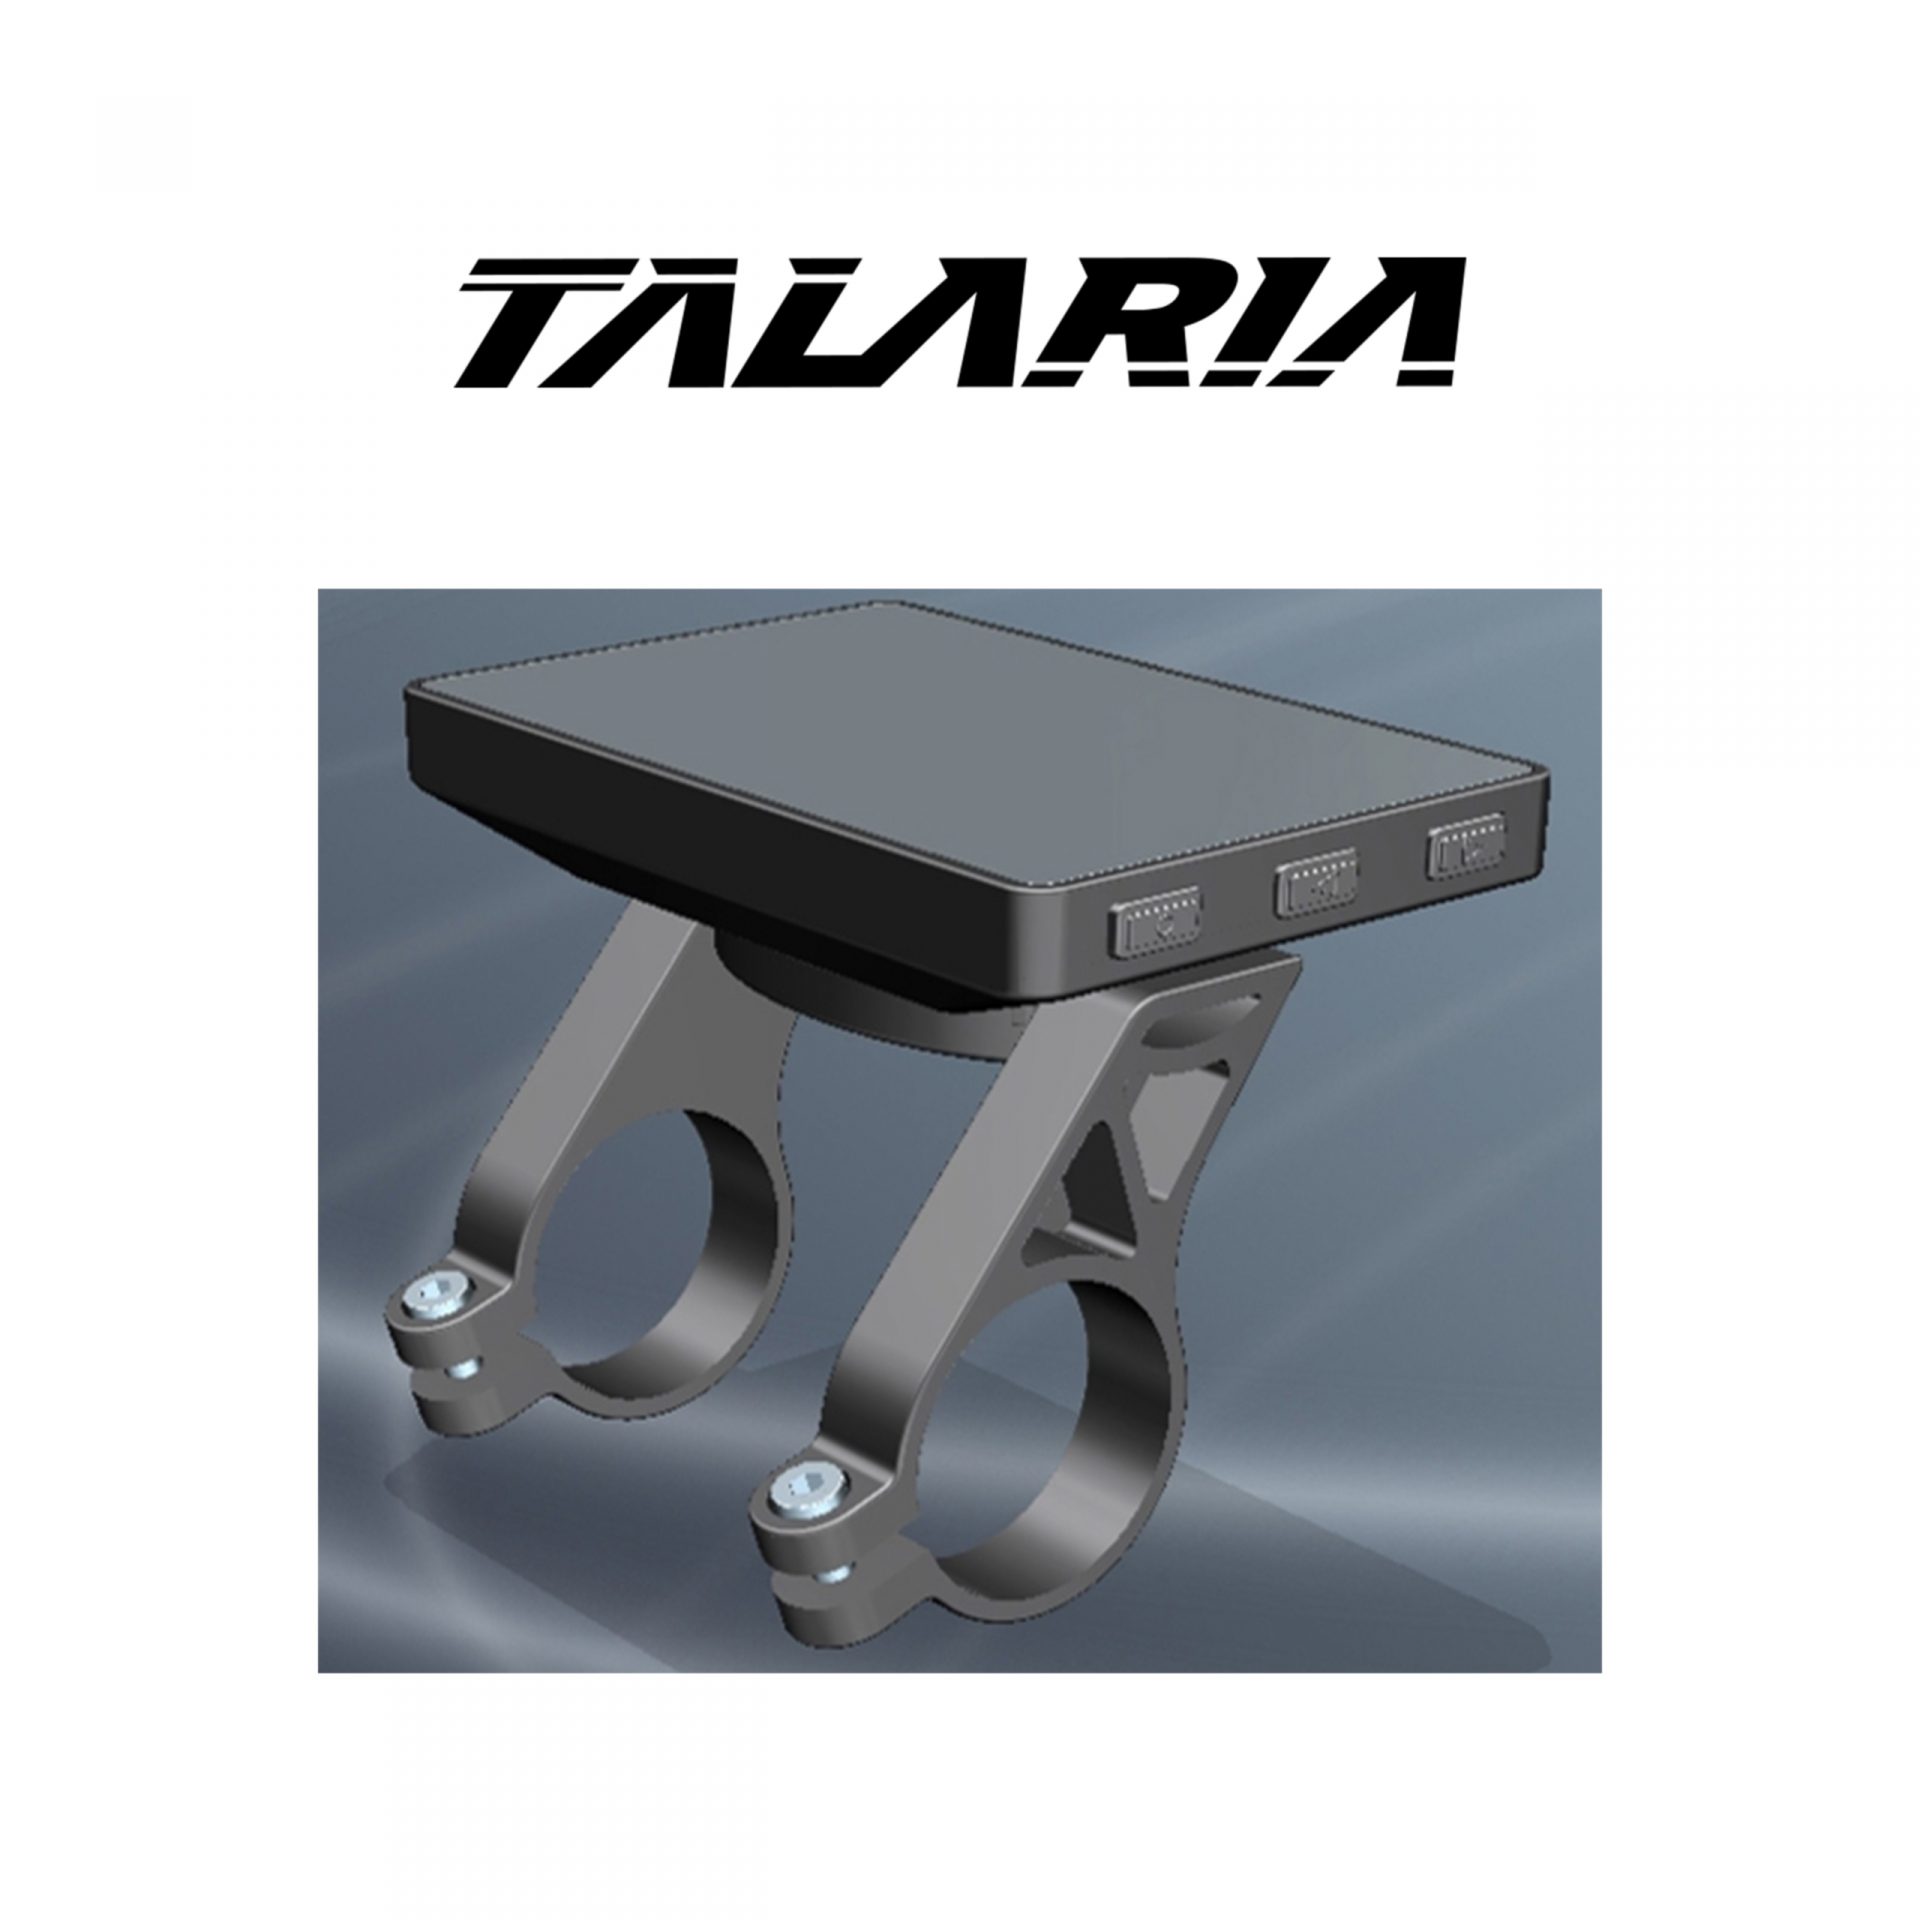 talaria-sting-r-l1e_display_grafik